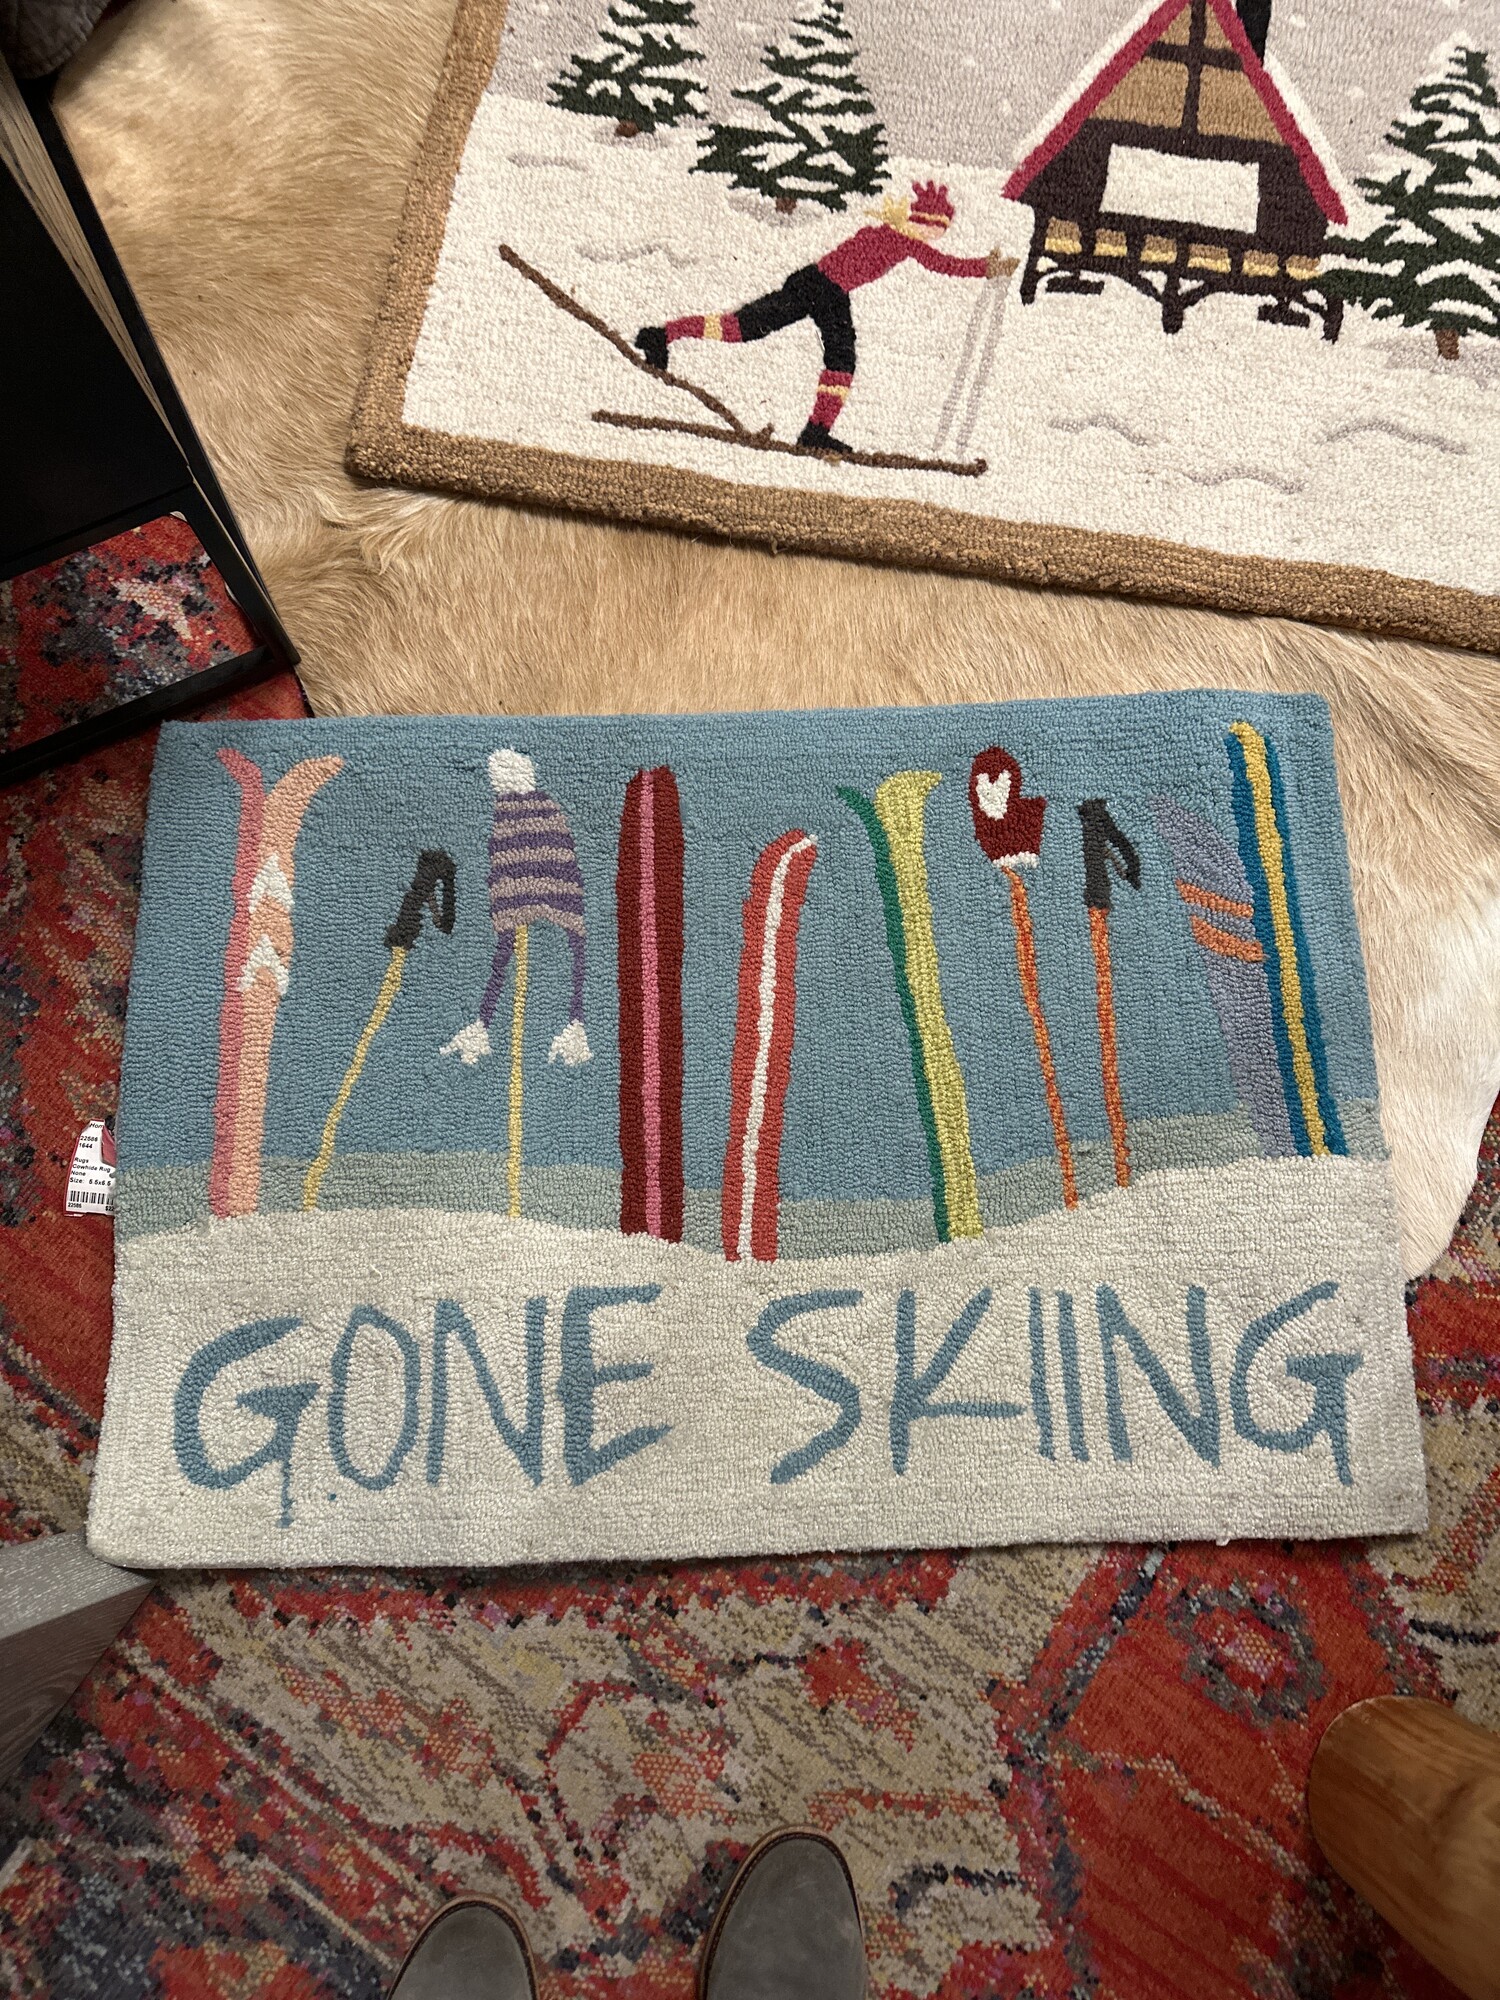 Gone Skiing

 Size: 31Lx21W